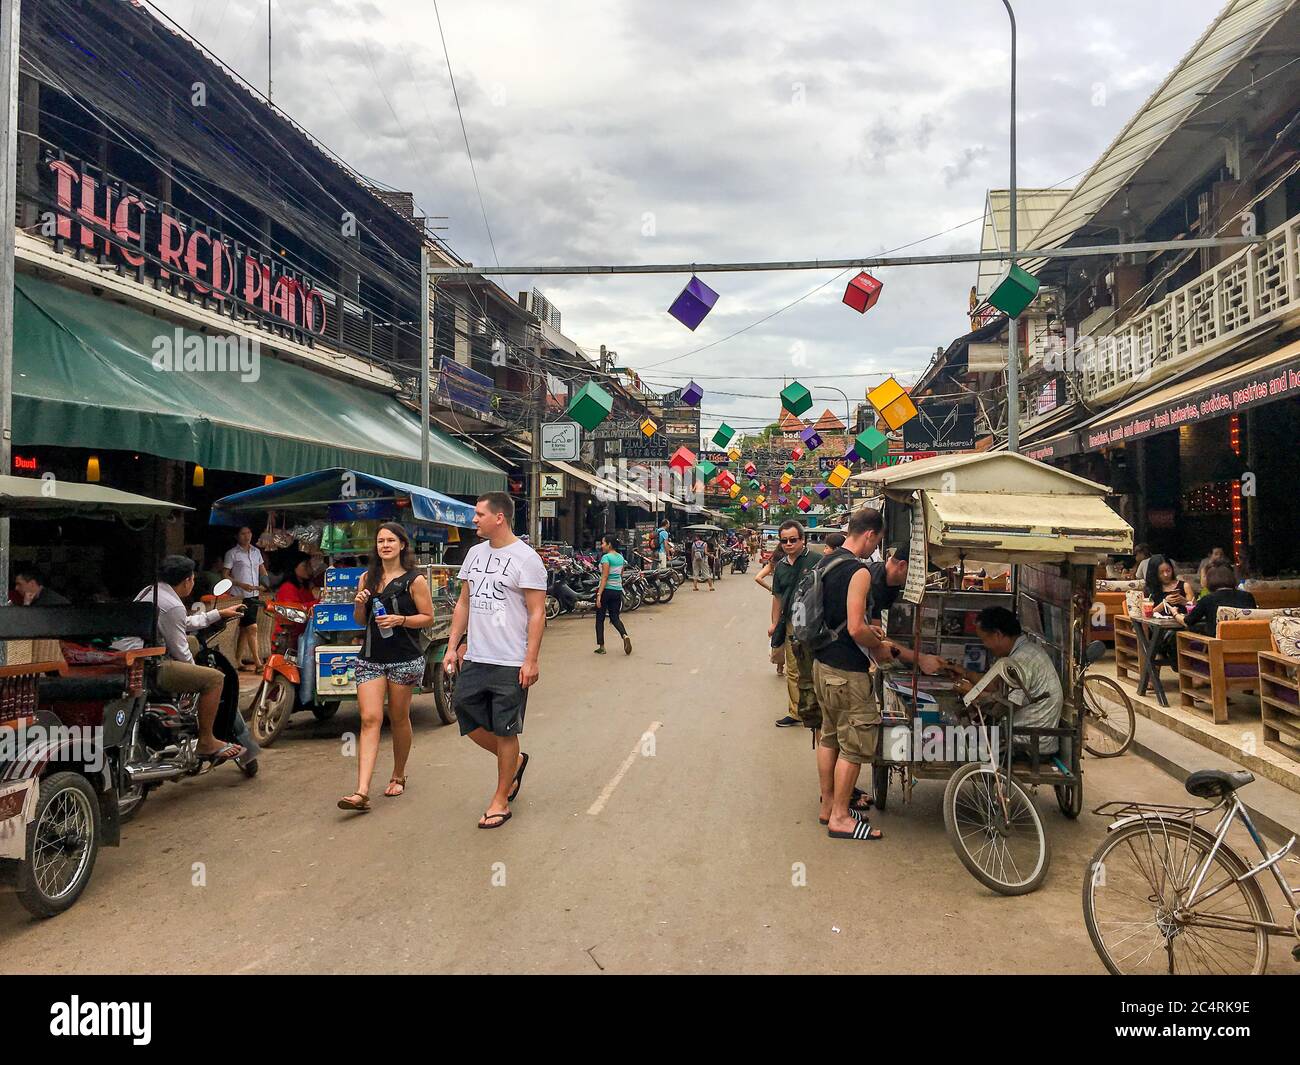 Kambodscha, Siem Reap, Januar 2017 : Gegend der Kneipensraße in der Provinz Siem Reap in Kambodscha. Viele Touristen kommen für die Reise Sightseeing. Kneipstraße mit r Stockfoto